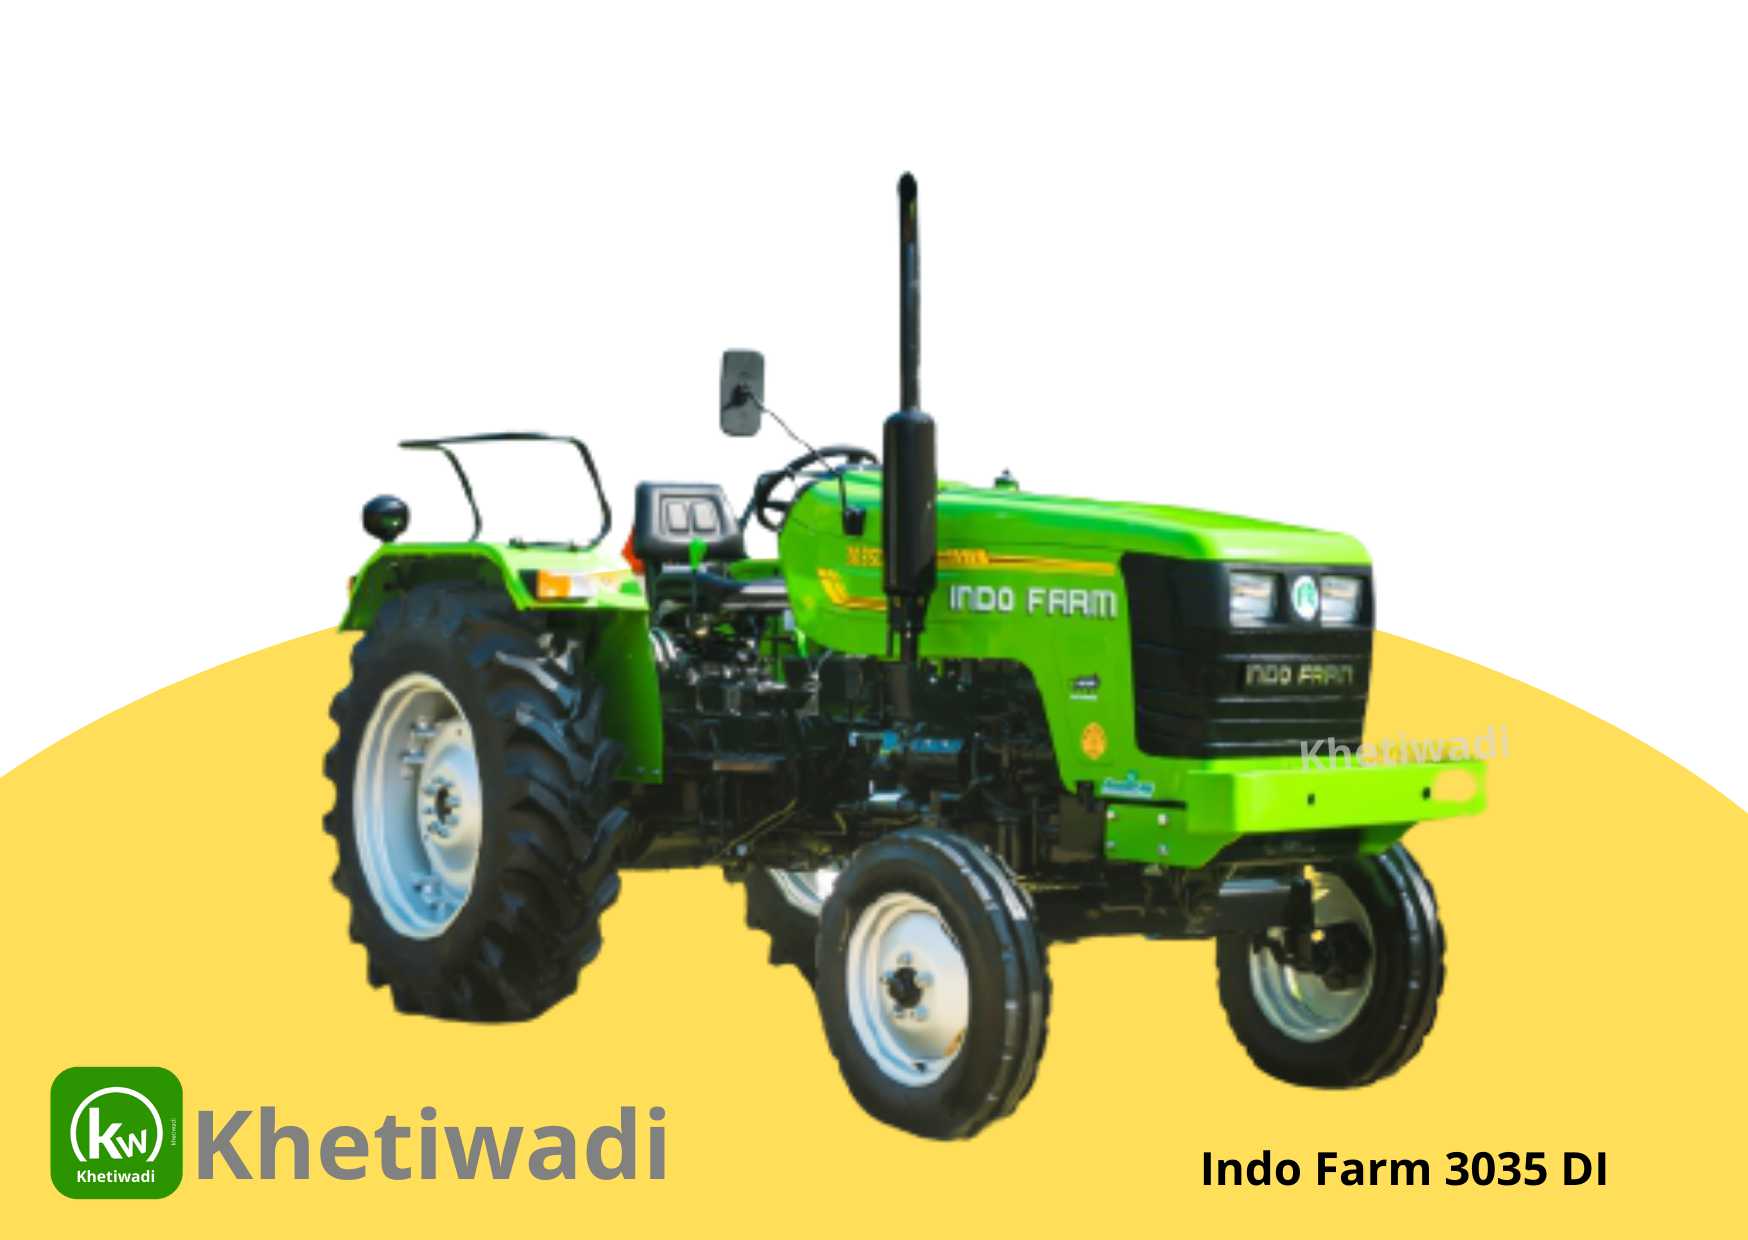 Indo Farm 3035 DI image